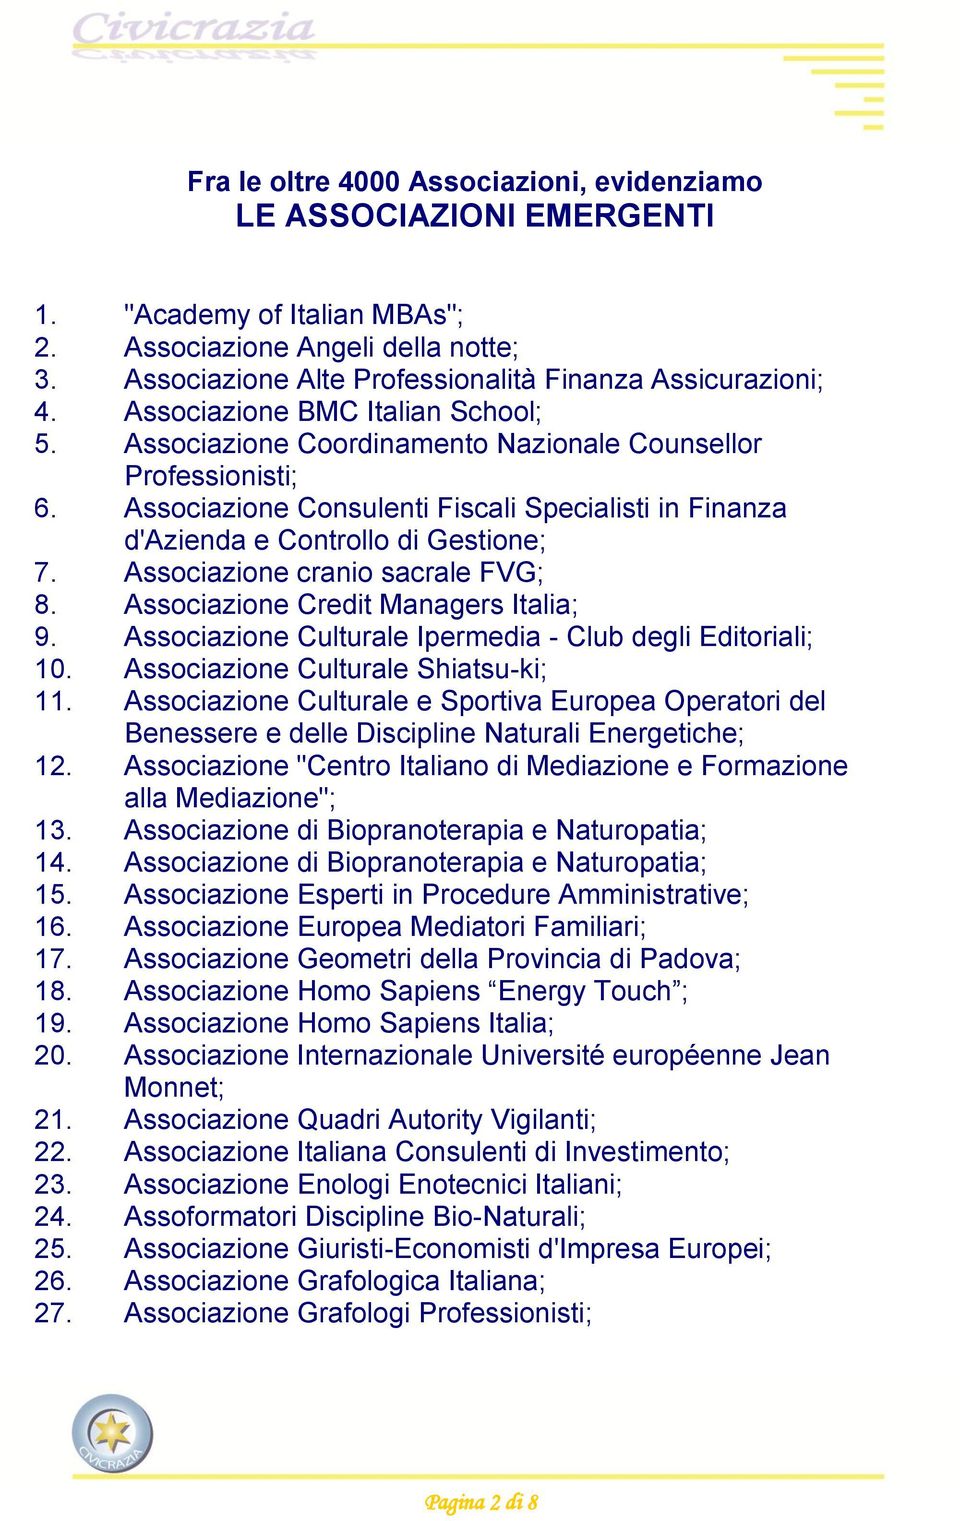 Associazione cranio sacrale FVG; 8. Associazione Credit Managers Italia; 9. Associazione Culturale Ipermedia - Club degli Editoriali; 10. Associazione Culturale Shiatsu-ki; 11.